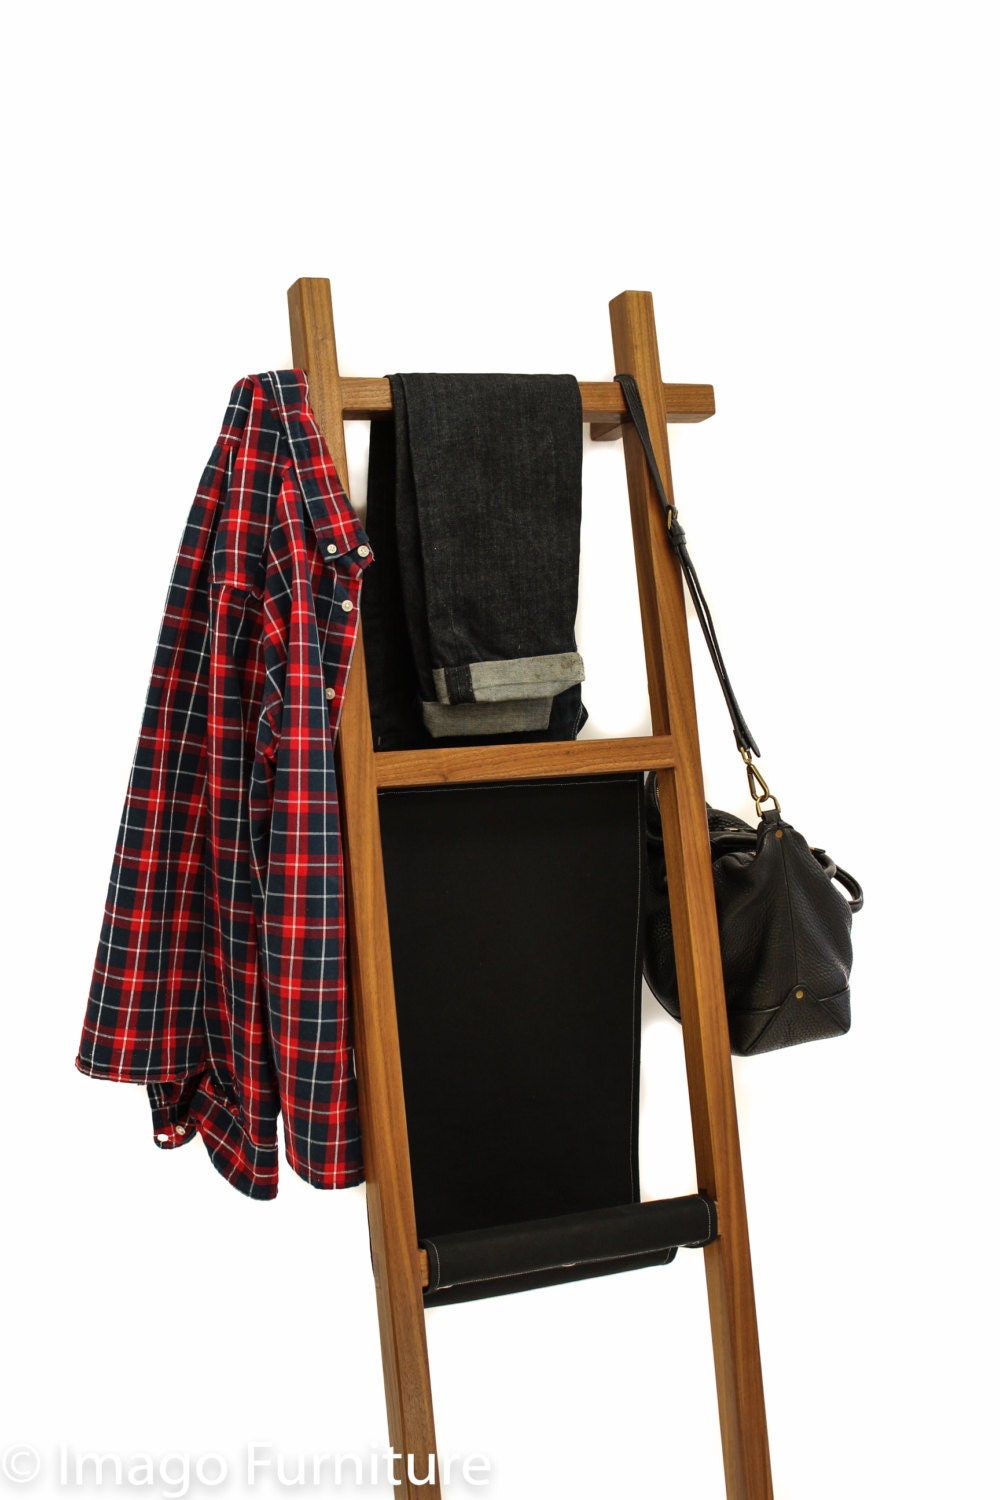 Clothing Ladder Walnut by ImagoFurniture on Etsy